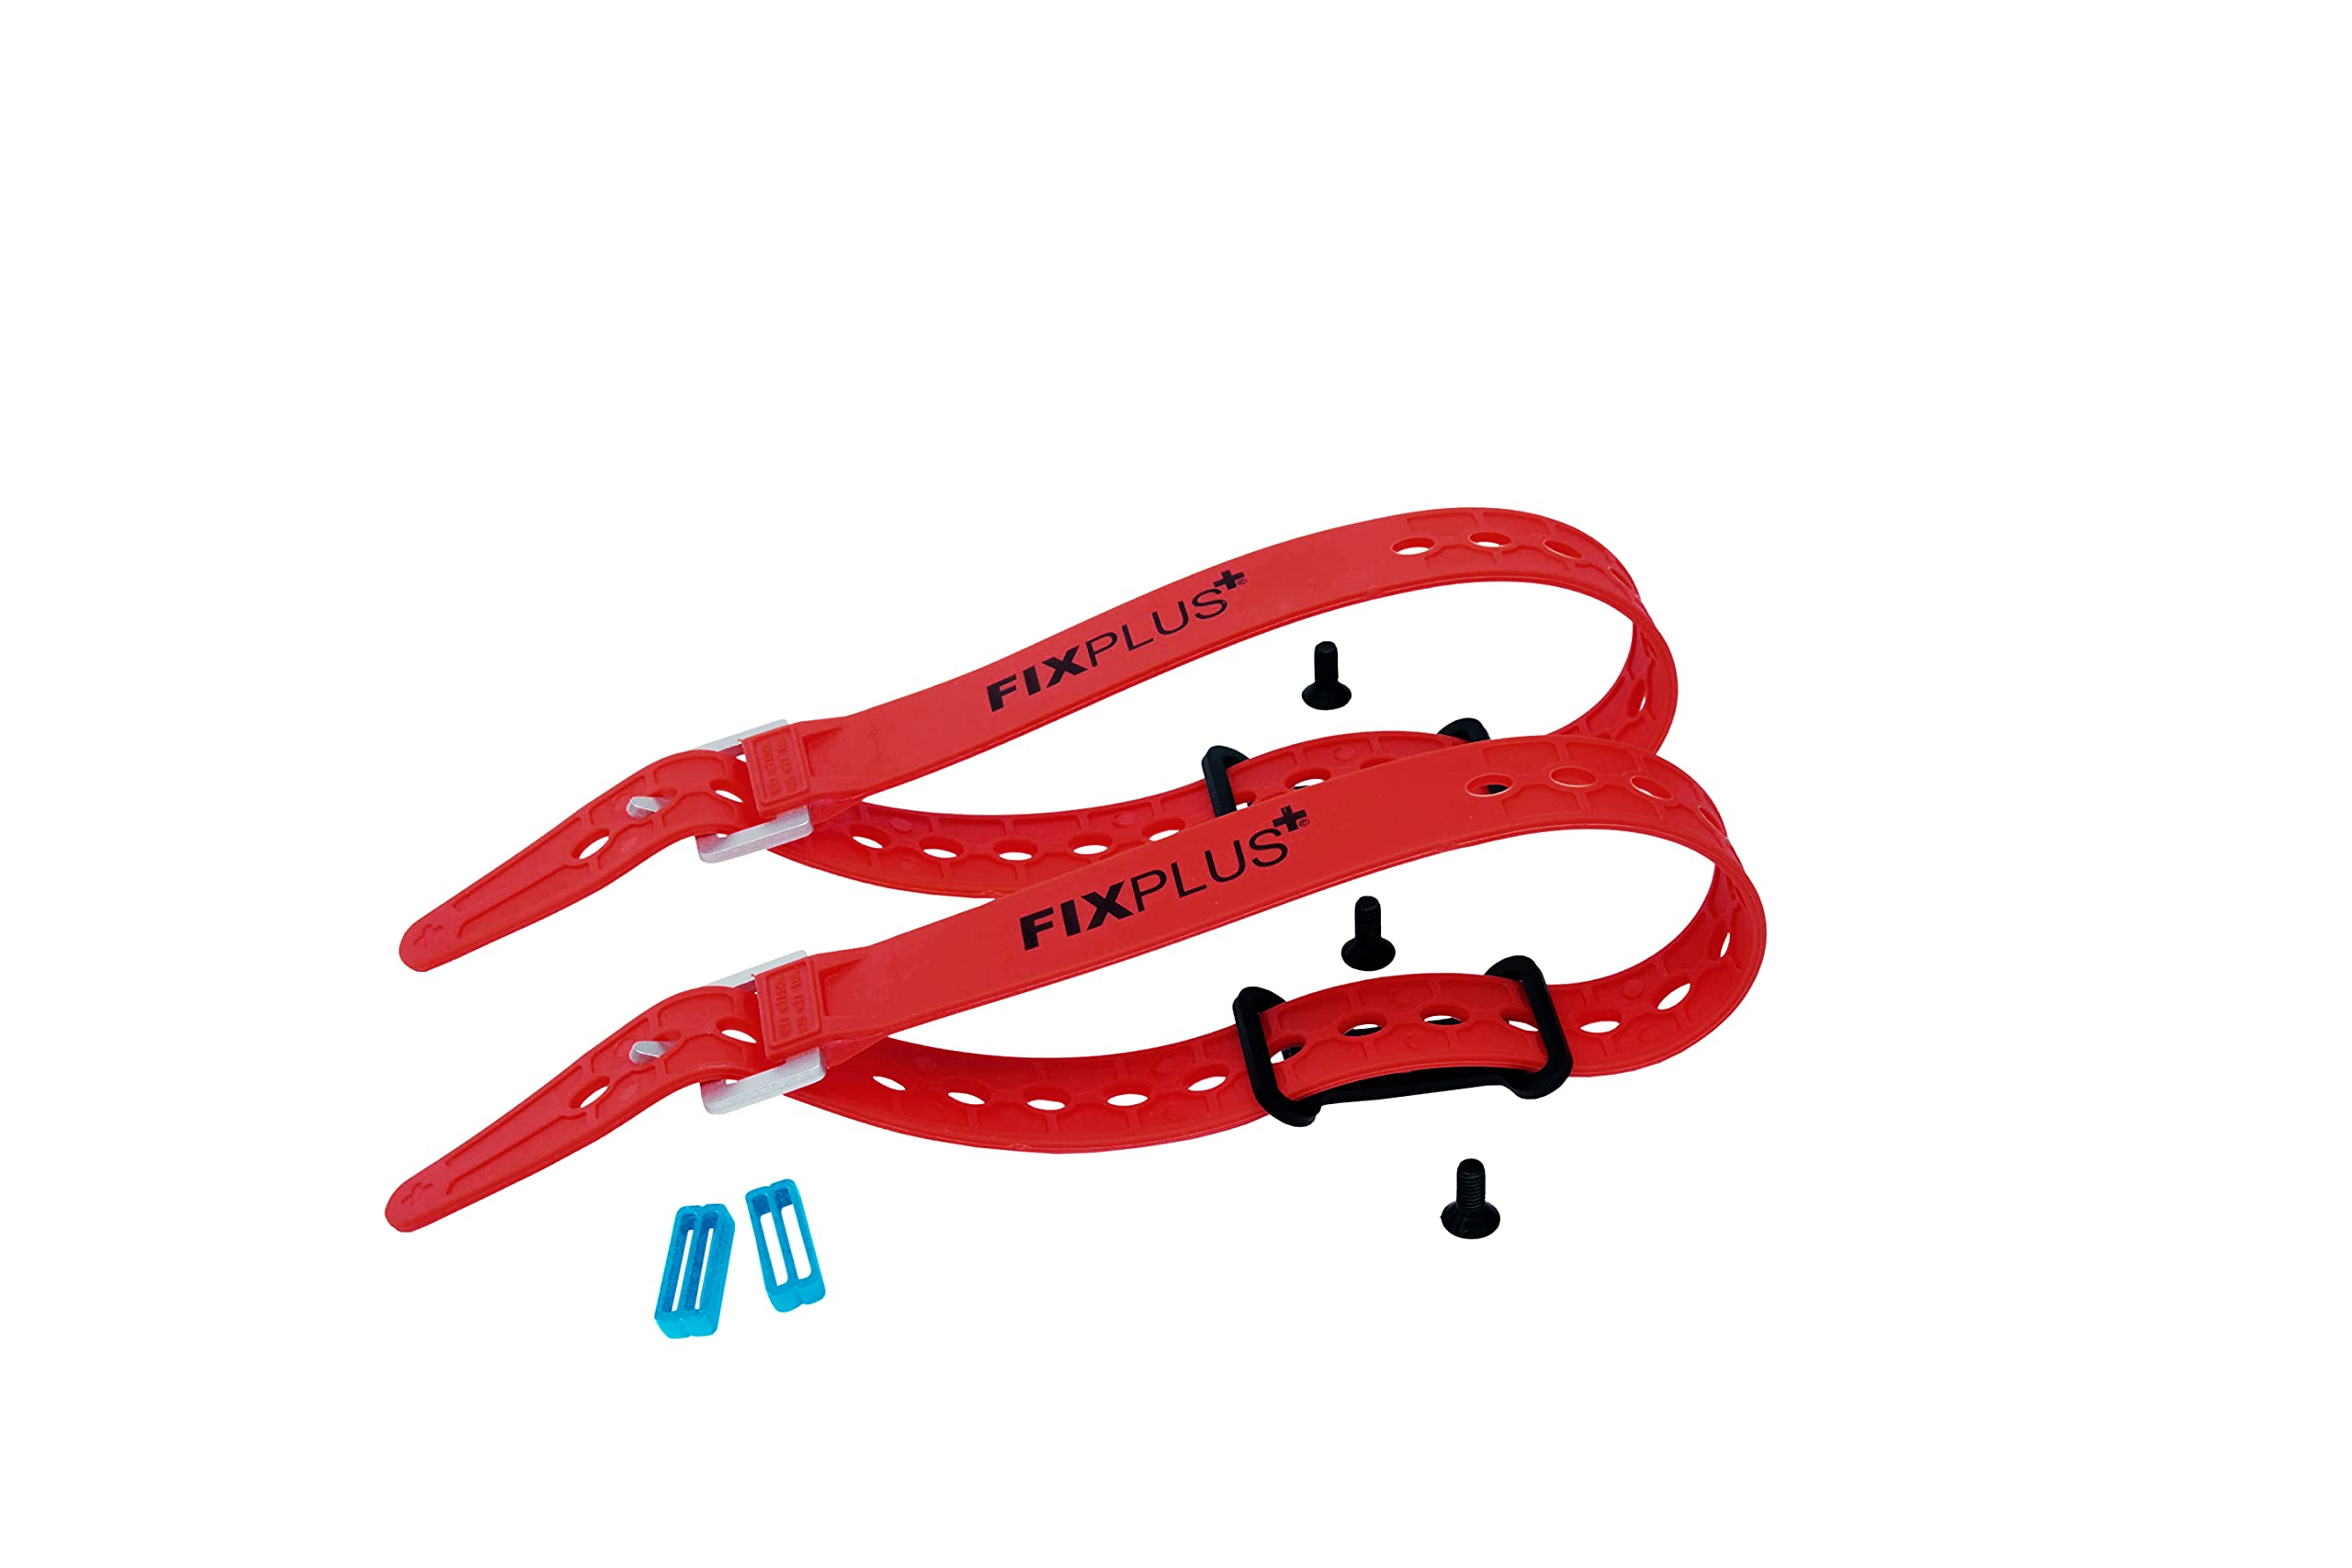 Fixplus Gear Tightener Set 46cm - Ladungsbefestigung am Fahrrad für große Teile – Zwei Aluminium Halter inkl. Schrauben + Zwei Spannbänder 46cm Länge (rot) und Zwei Strapkeeper (blau)